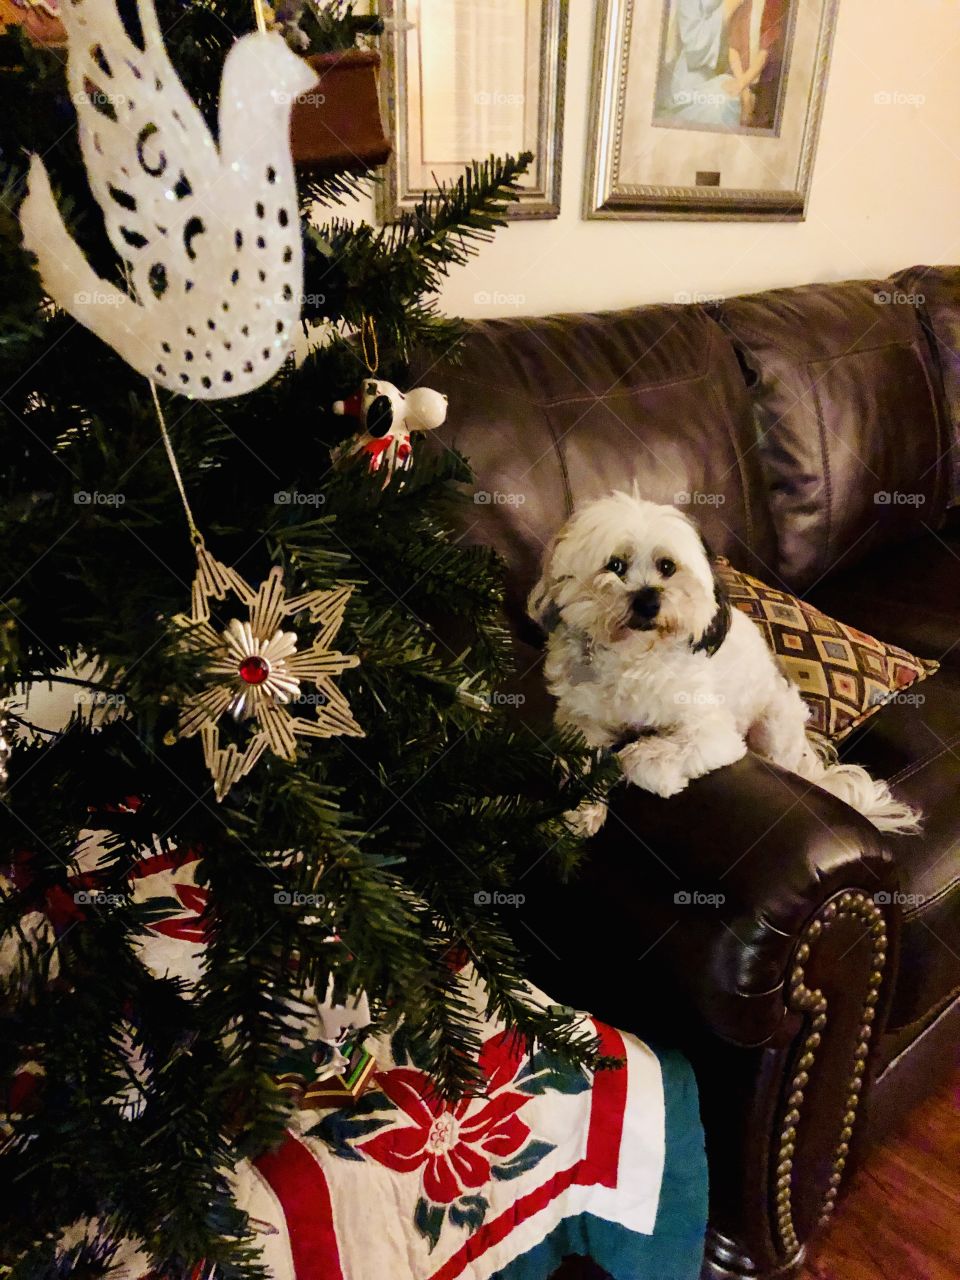 Oreo posing close to Christmas tree.